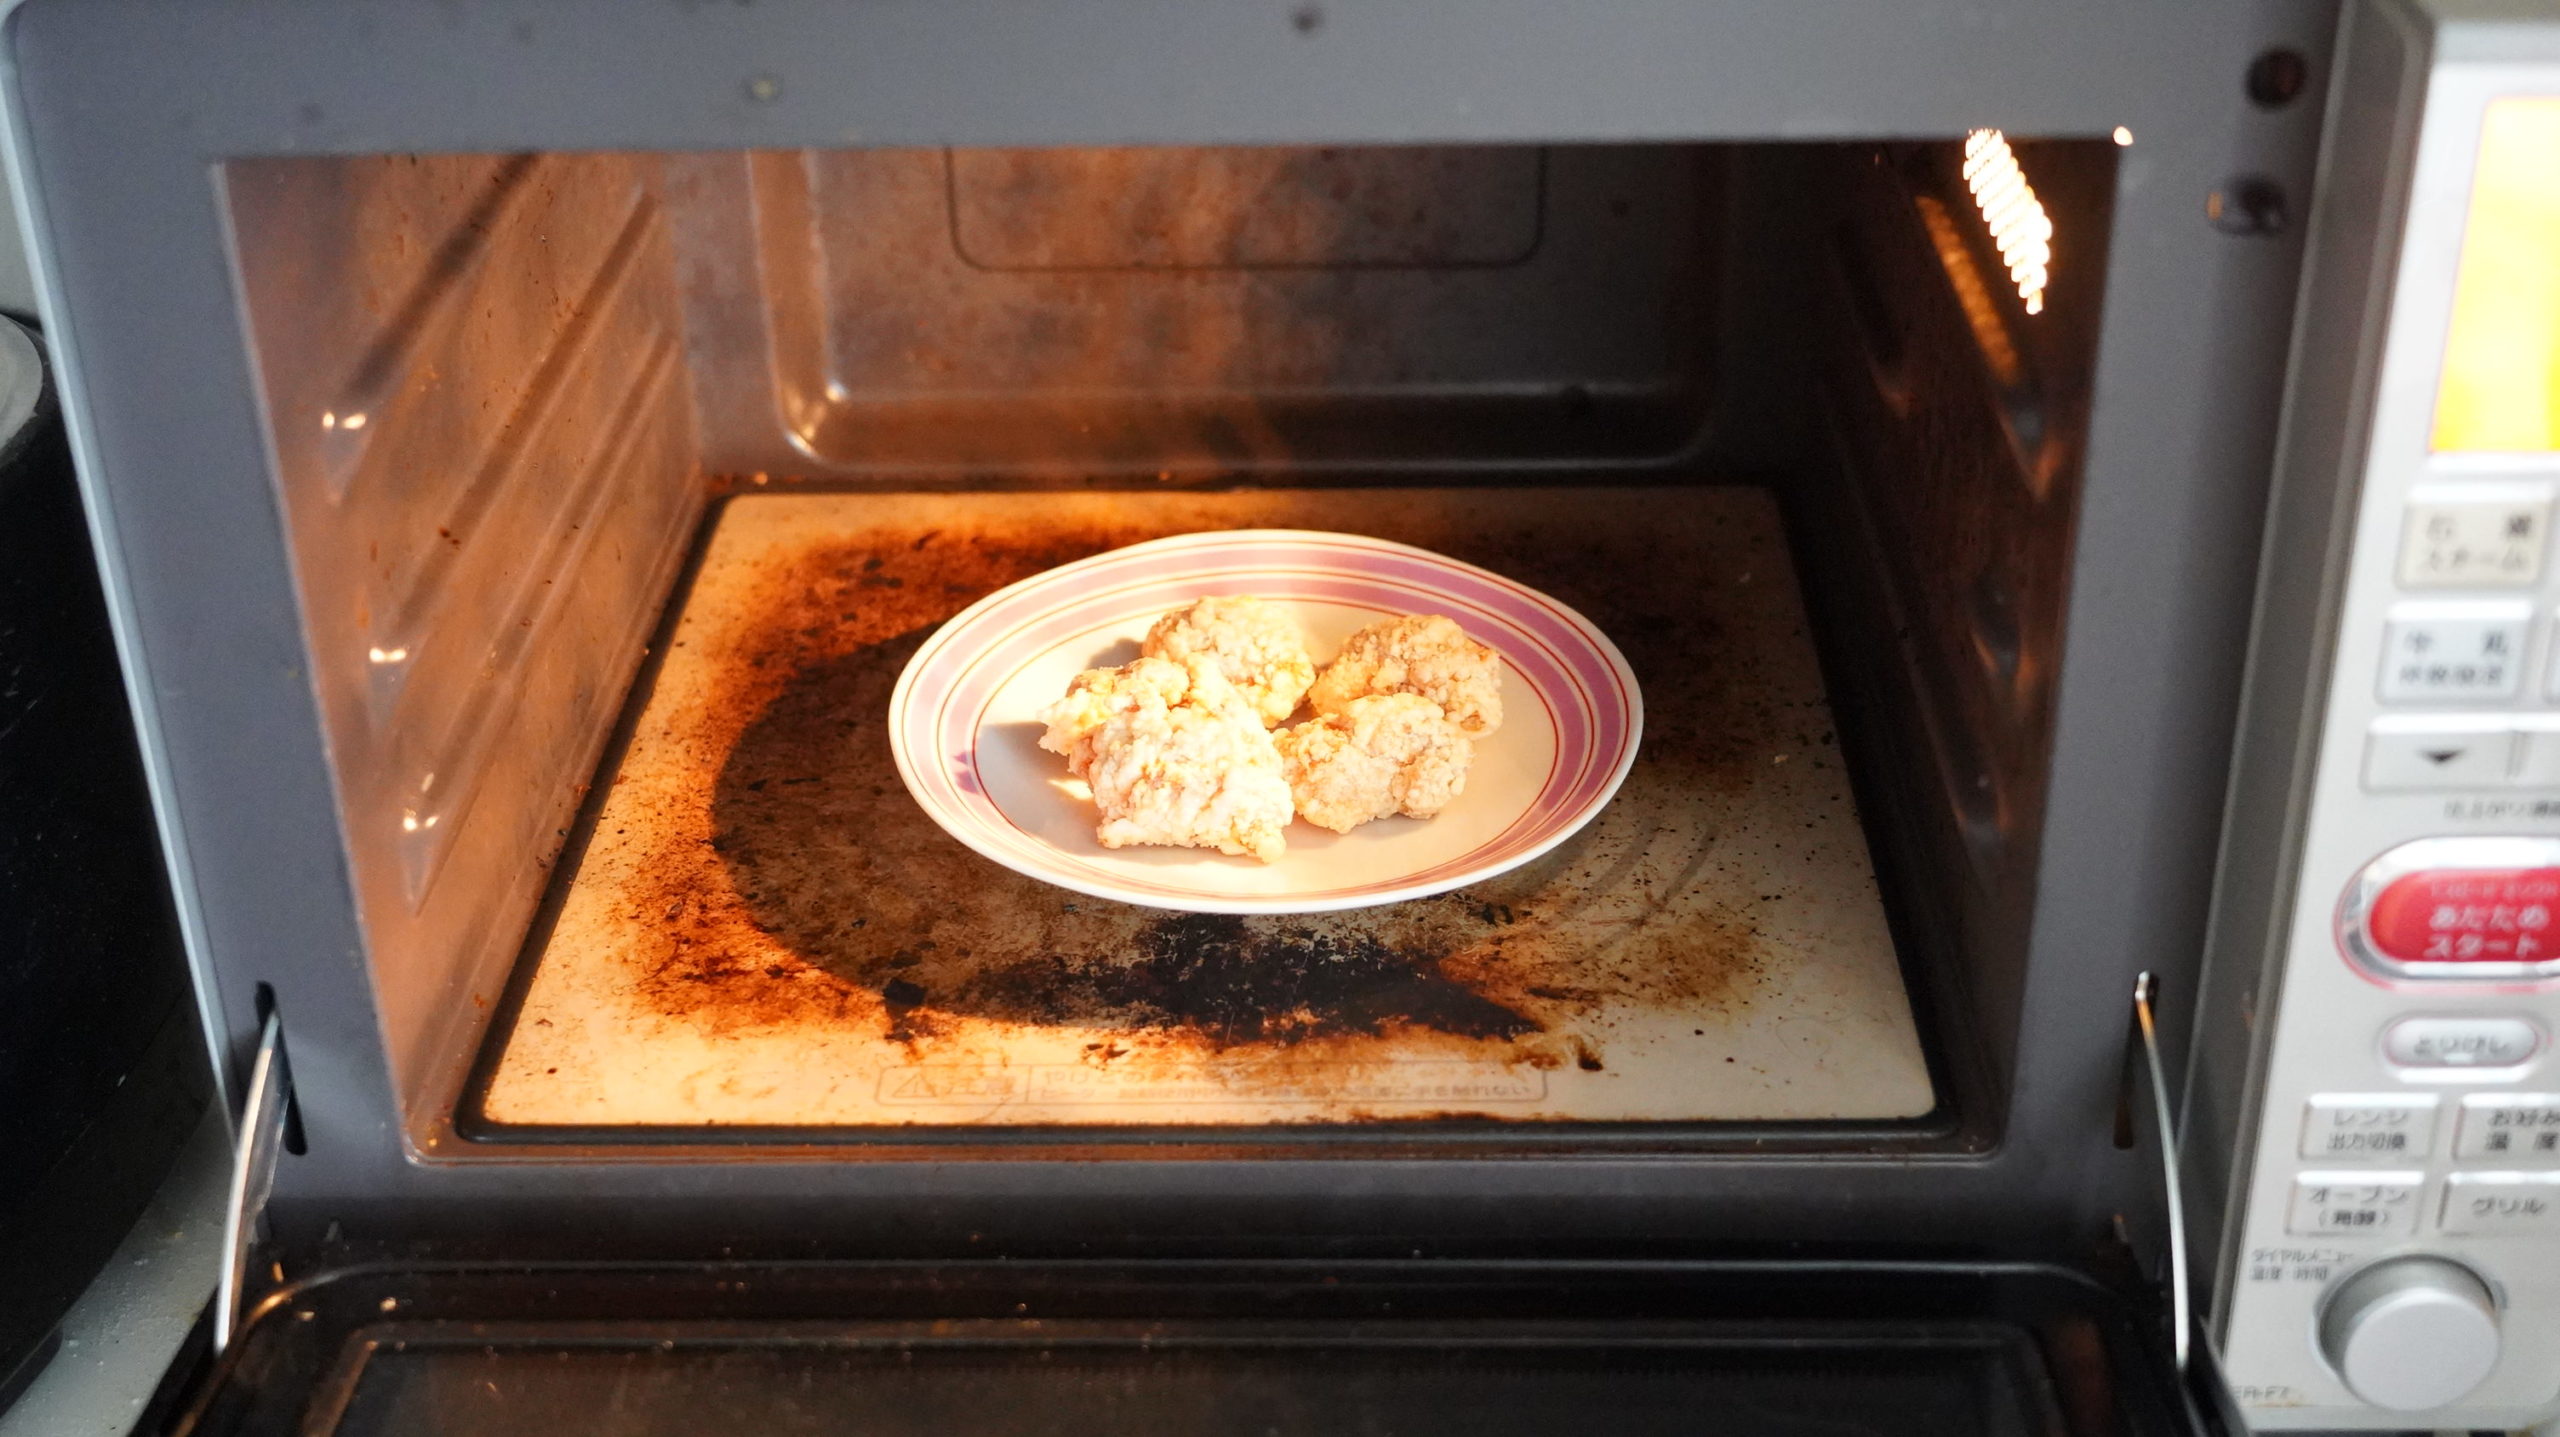 コストコの冷凍食品「CP 若鶏の竜田揚げ」を電子レンジで加熱している写真